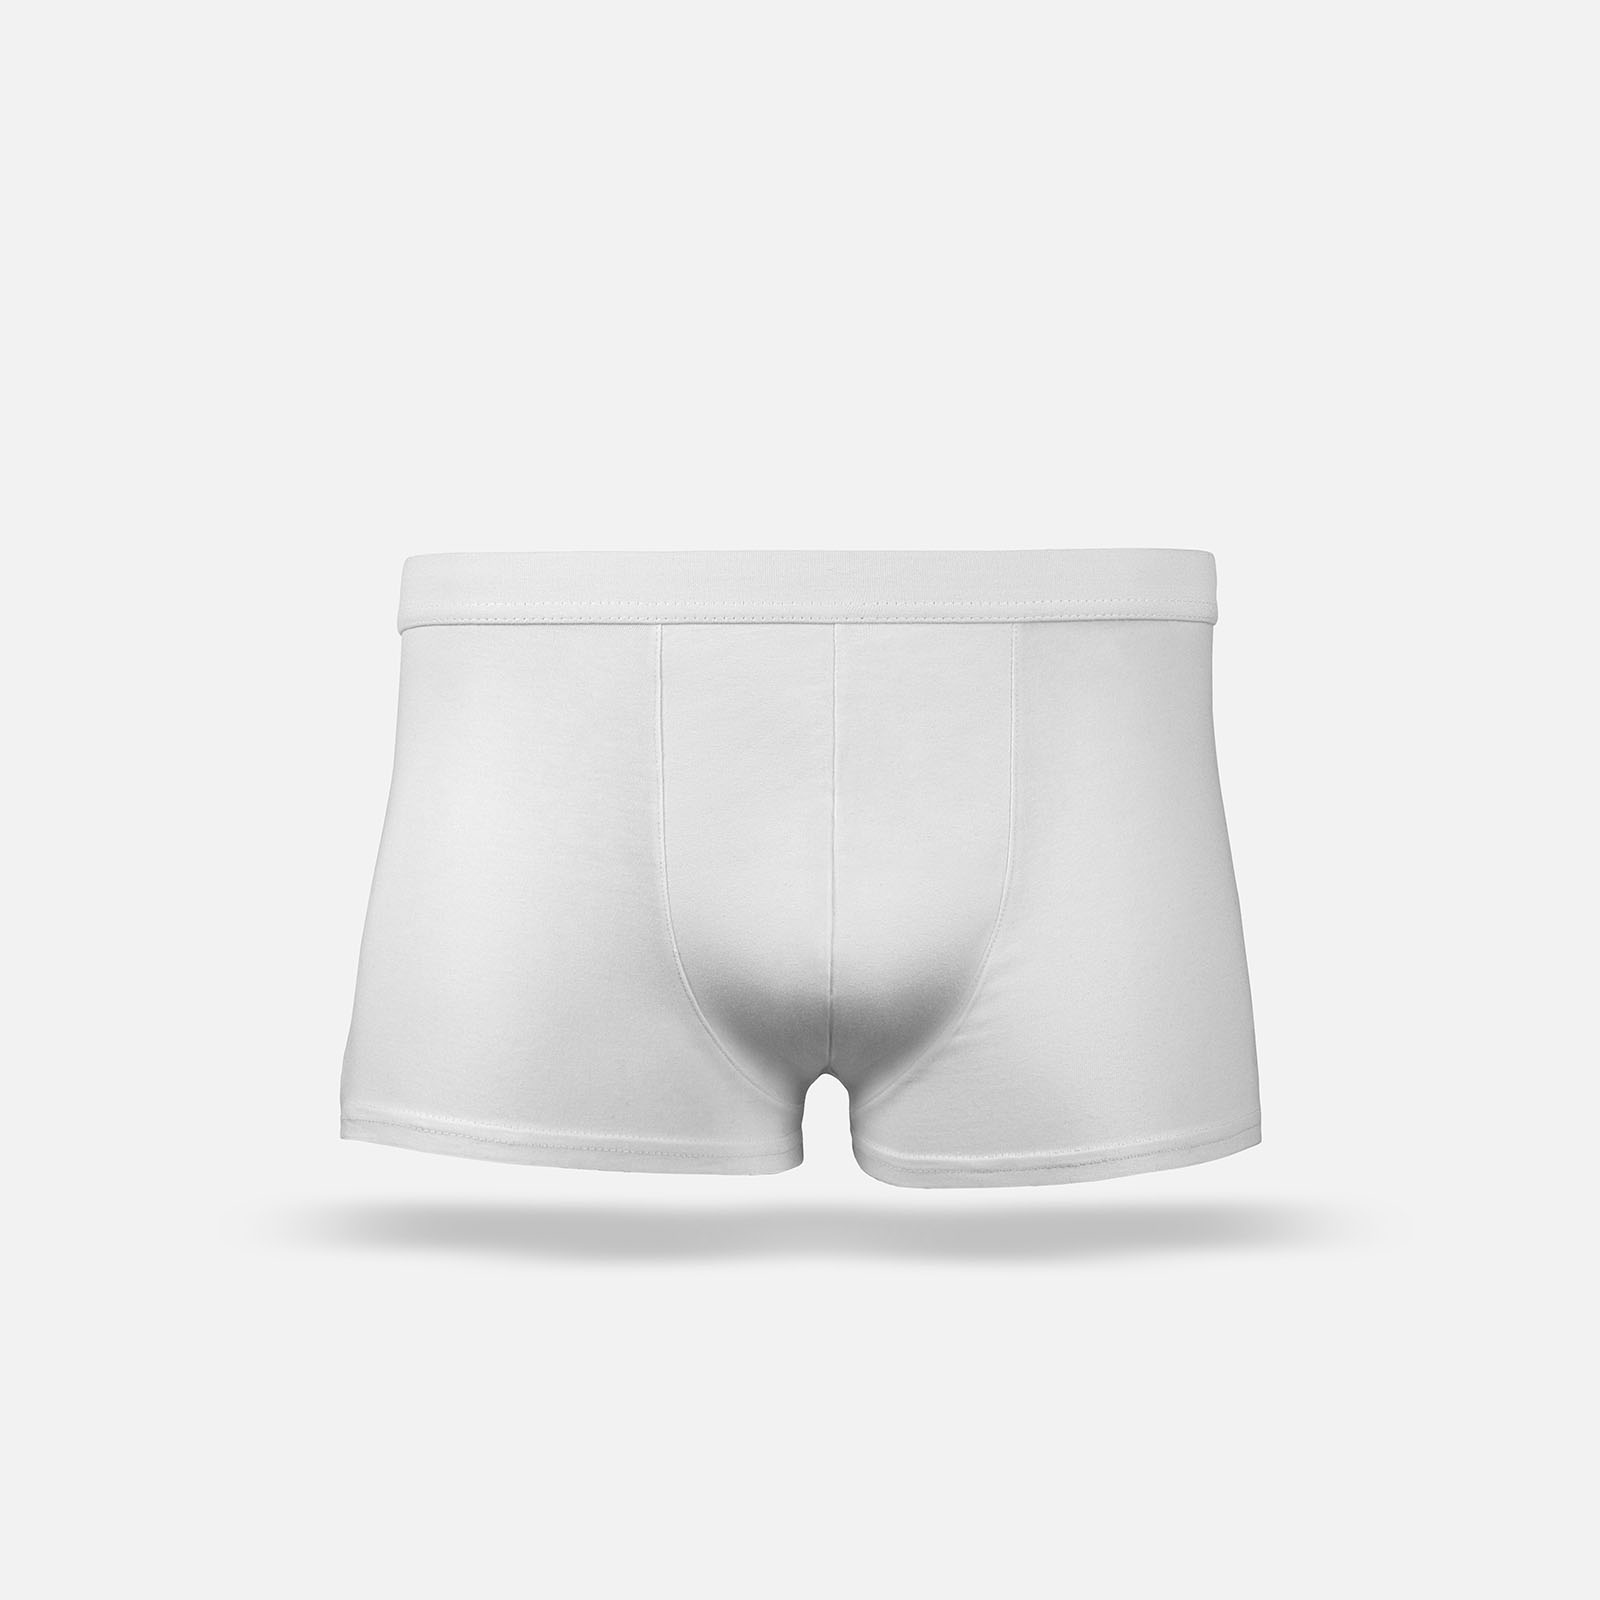 Male underwear mockup